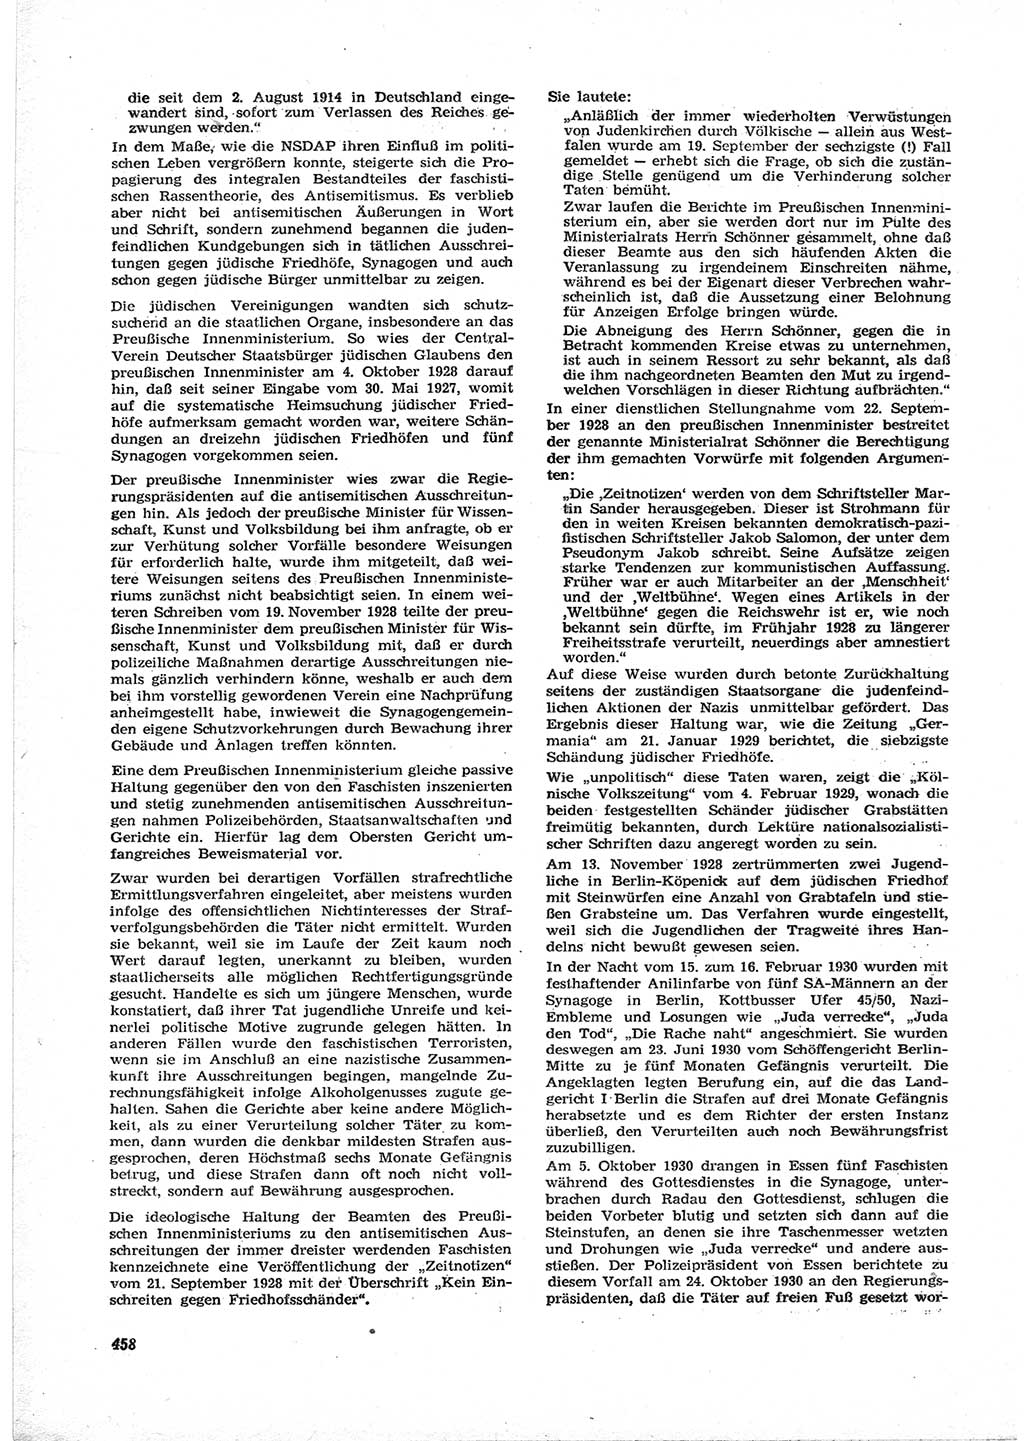 Neue Justiz (NJ), Zeitschrift für Recht und Rechtswissenschaft [Deutsche Demokratische Republik (DDR)], 17. Jahrgang 1963, Seite 458 (NJ DDR 1963, S. 458)